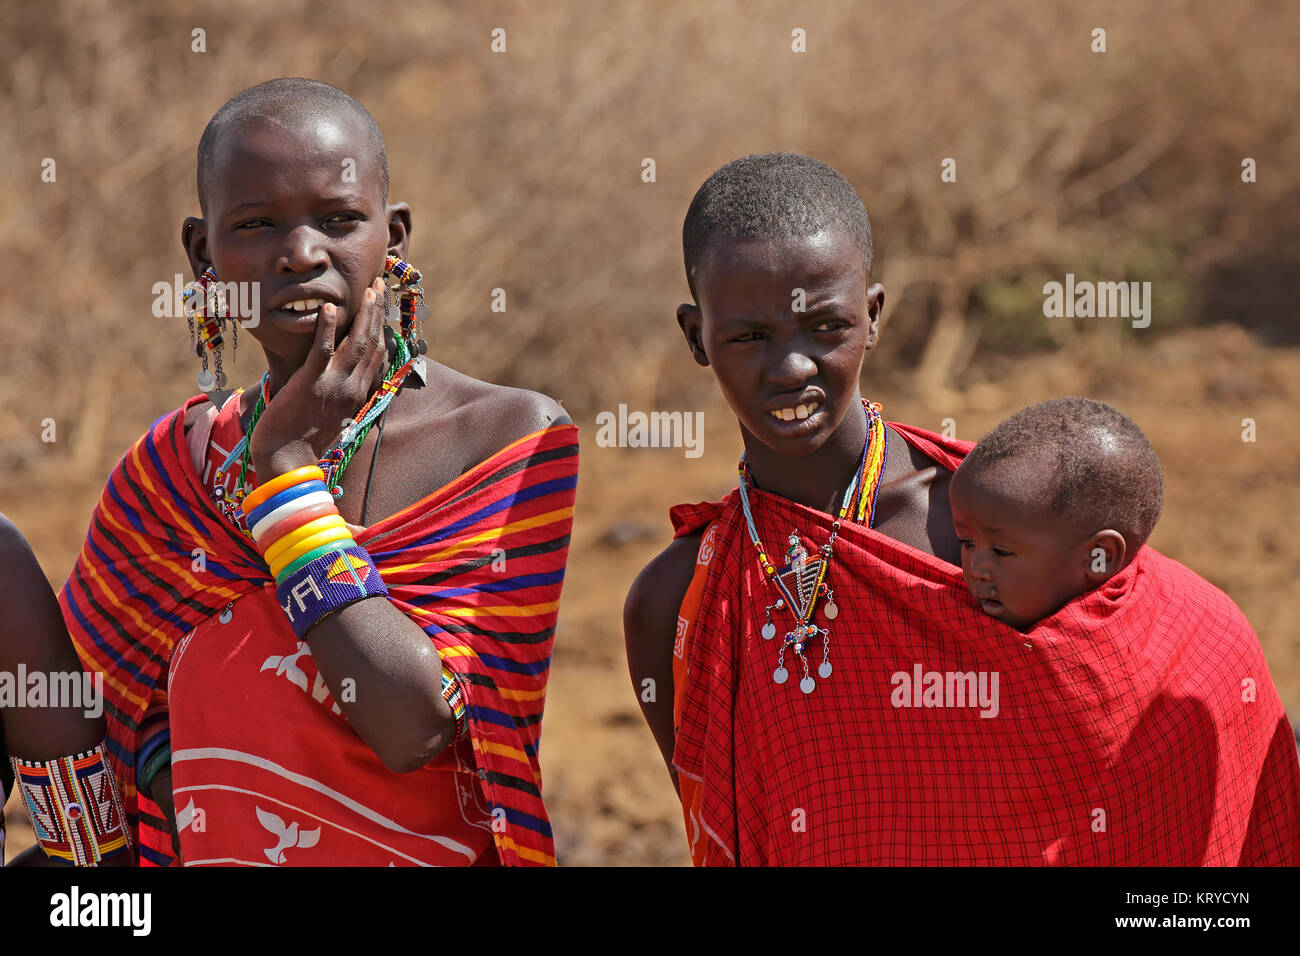 AMBOSELI, KENYA - 31 août 2013 : Portrait de femme et enfant Masaï non identifiés avec les décorations traditionnelles et colorées de vêtements rouge. Banque D'Images